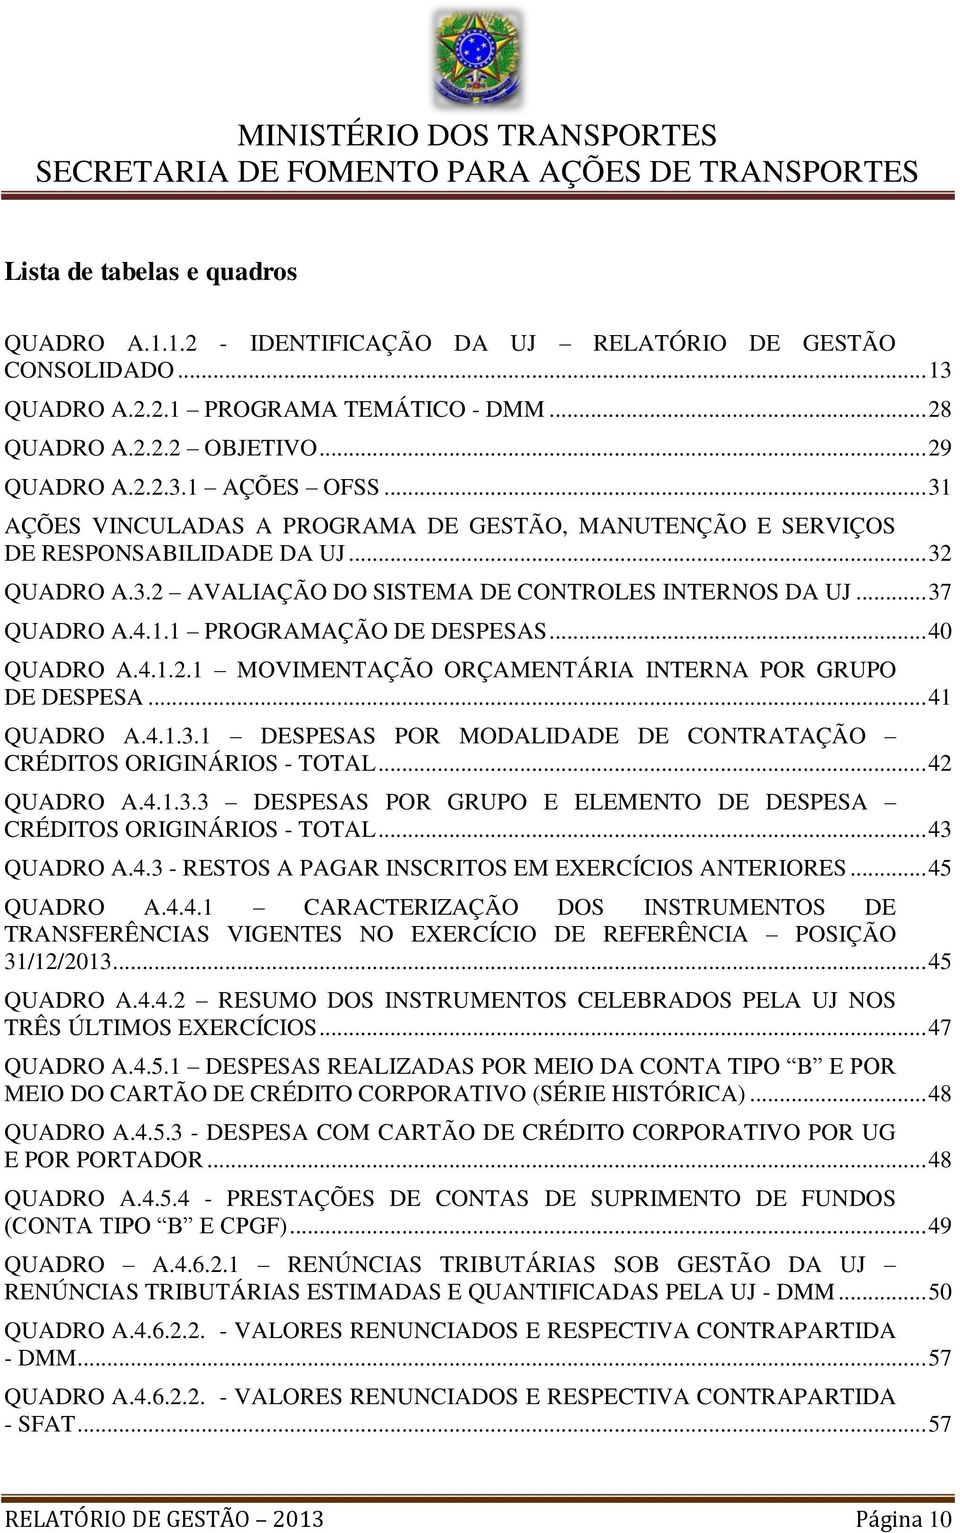 .. 40 QUADRO A.4.1.2.1 MOVIMENTAÇÃO ORÇAMENTÁRIA INTERNA POR GRUPO DE DESPESA... 41 QUADRO A.4.1.3.1 DESPESAS POR MODALIDADE DE CONTRATAÇÃO CRÉDITOS ORIGINÁRIOS - TOTAL... 42 QUADRO A.4.1.3.3 DESPESAS POR GRUPO E ELEMENTO DE DESPESA CRÉDITOS ORIGINÁRIOS - TOTAL.